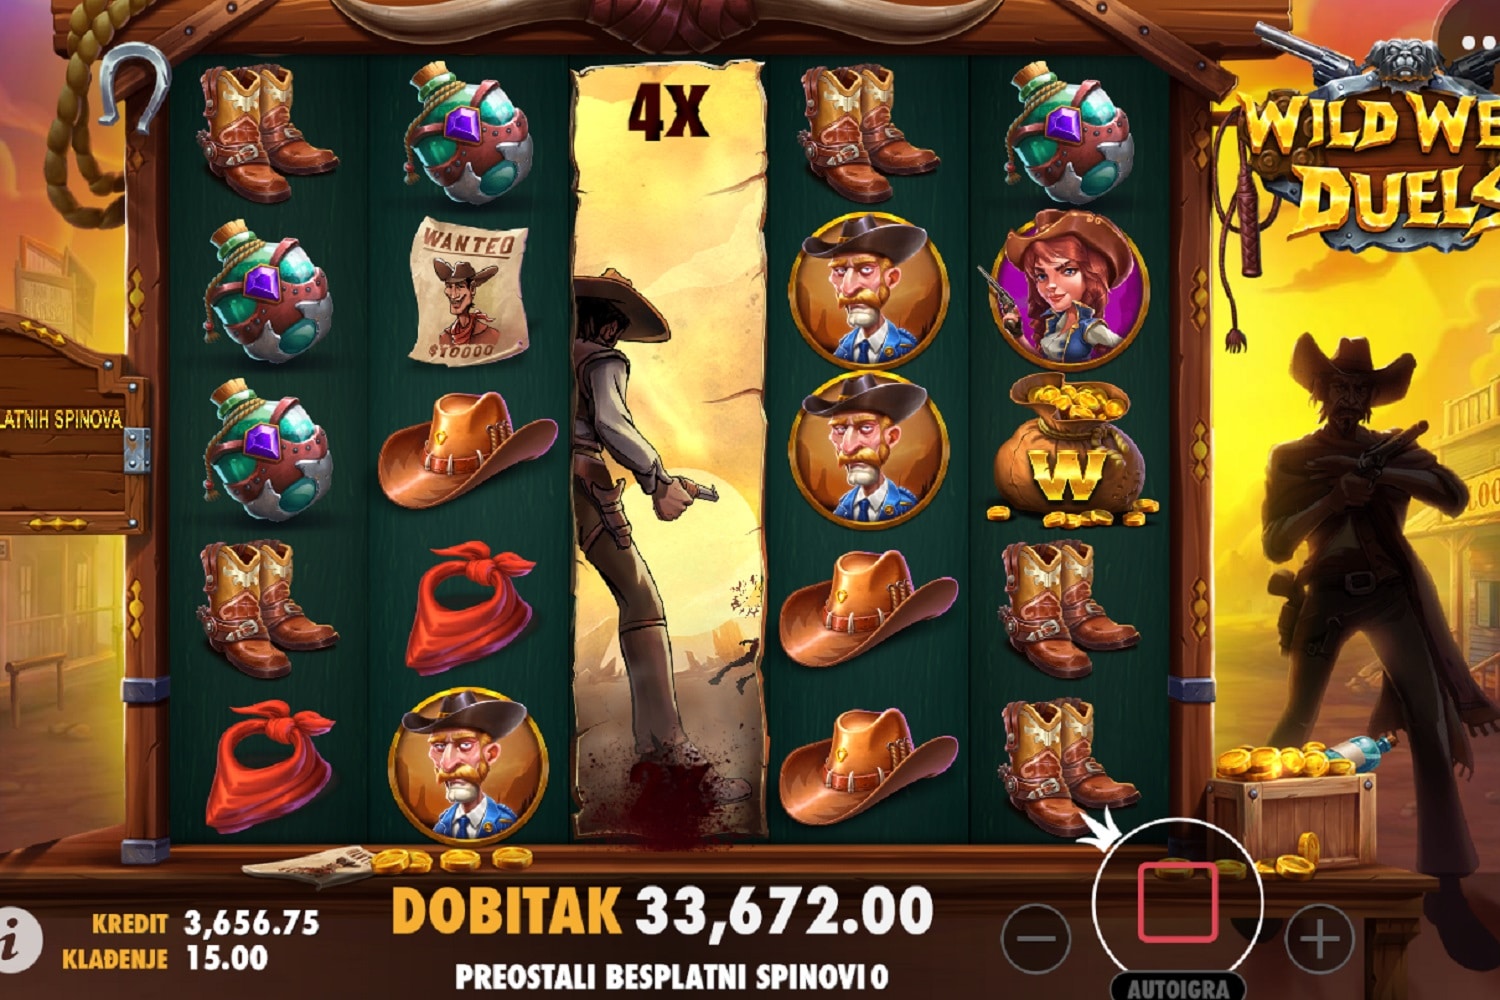 Wild West Duels Casino win picture by MarkoSRBA 33672KR 2244.8x 17.5.2023